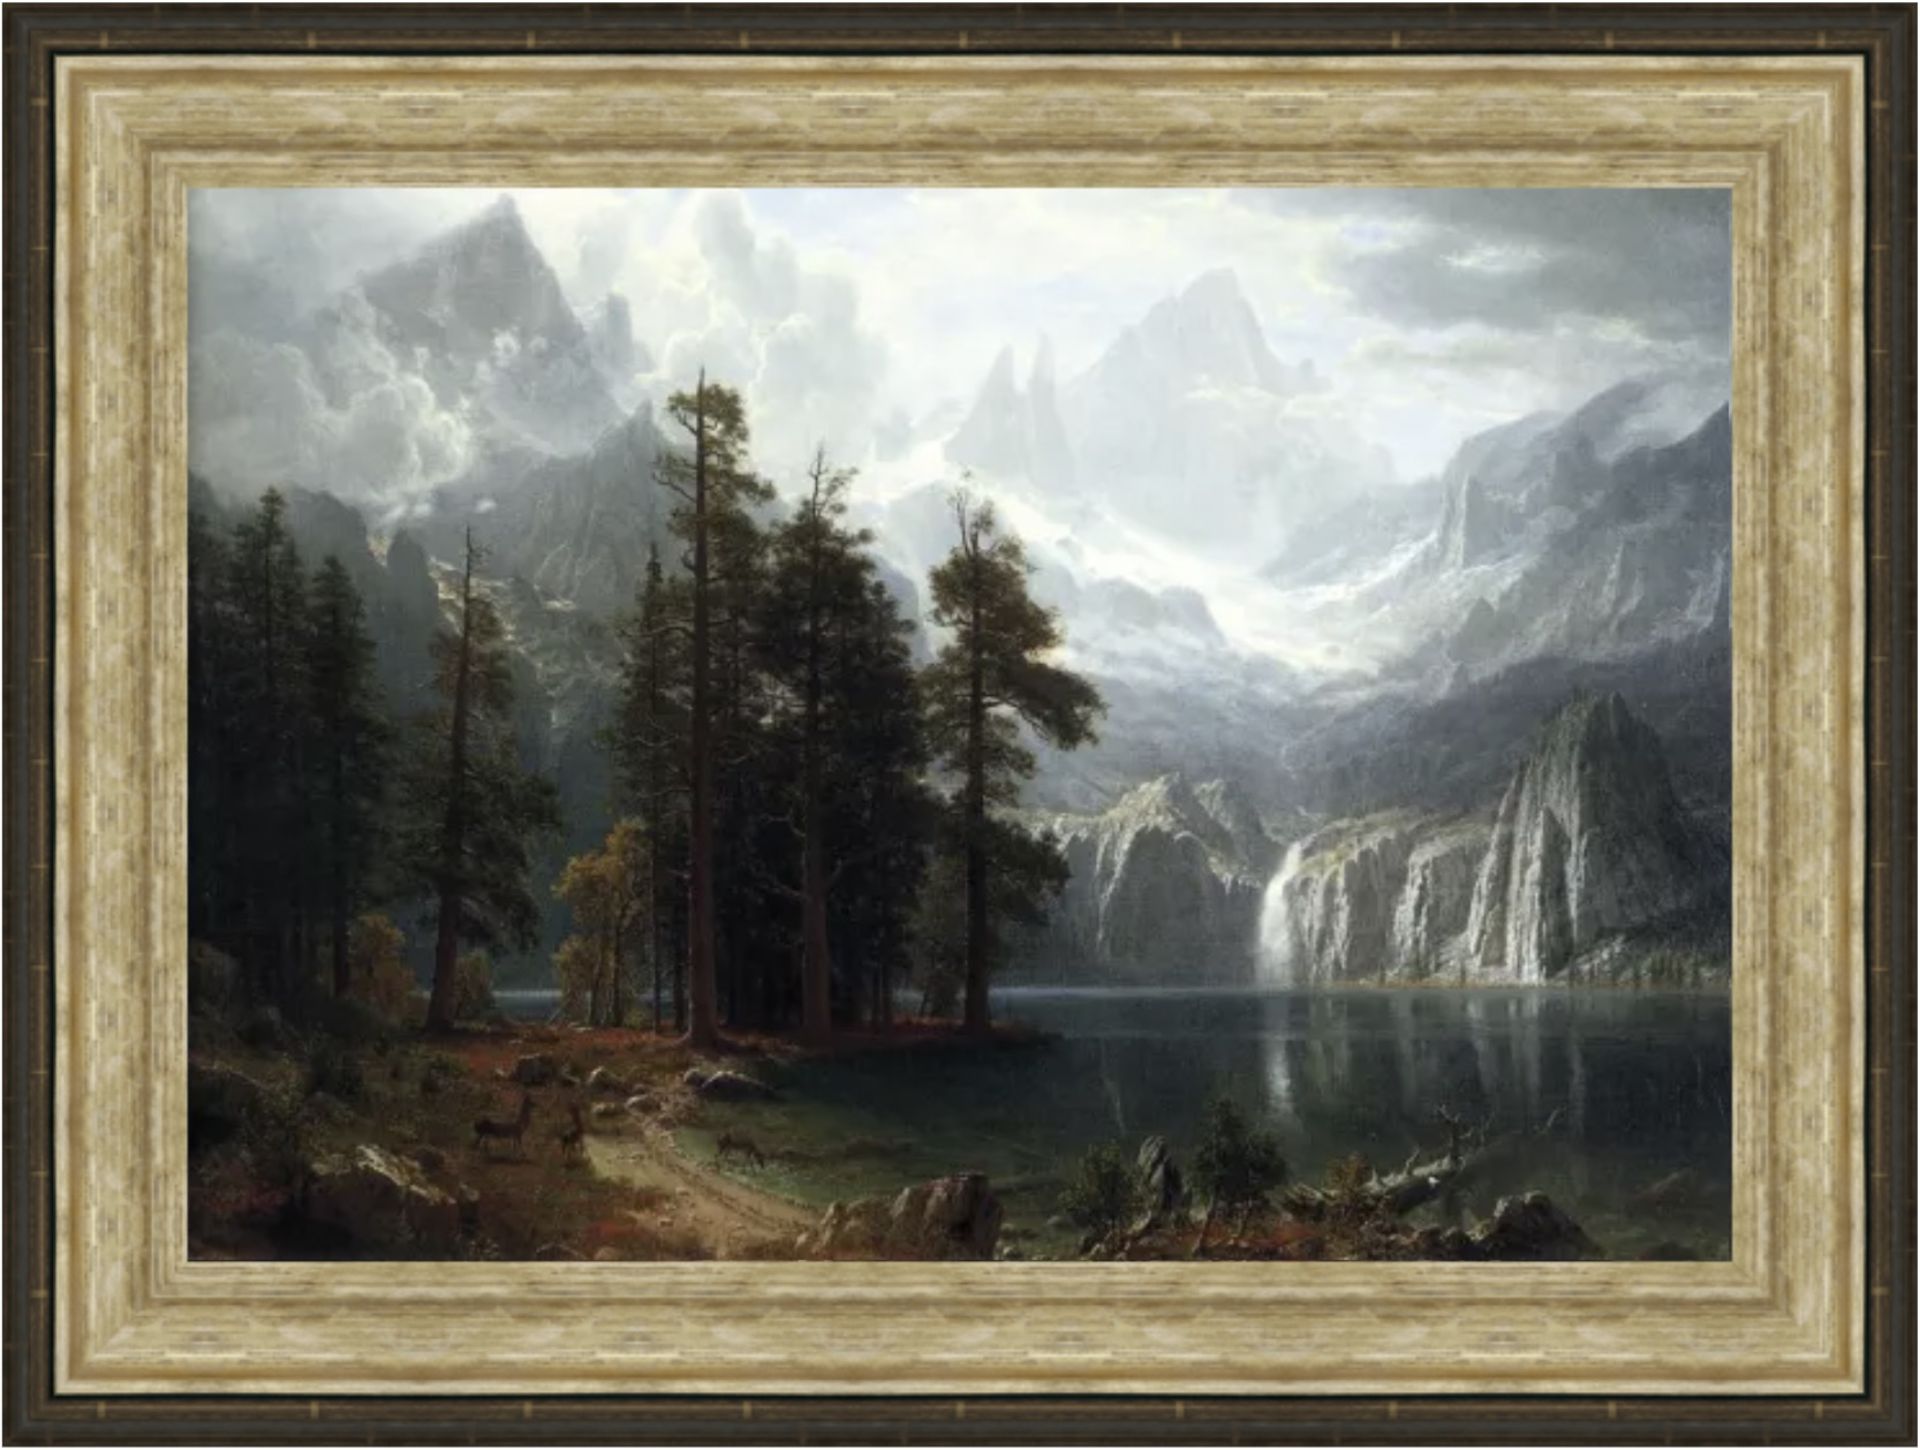 Albert Bierstadt "Sierra Nevada" Oil Painting